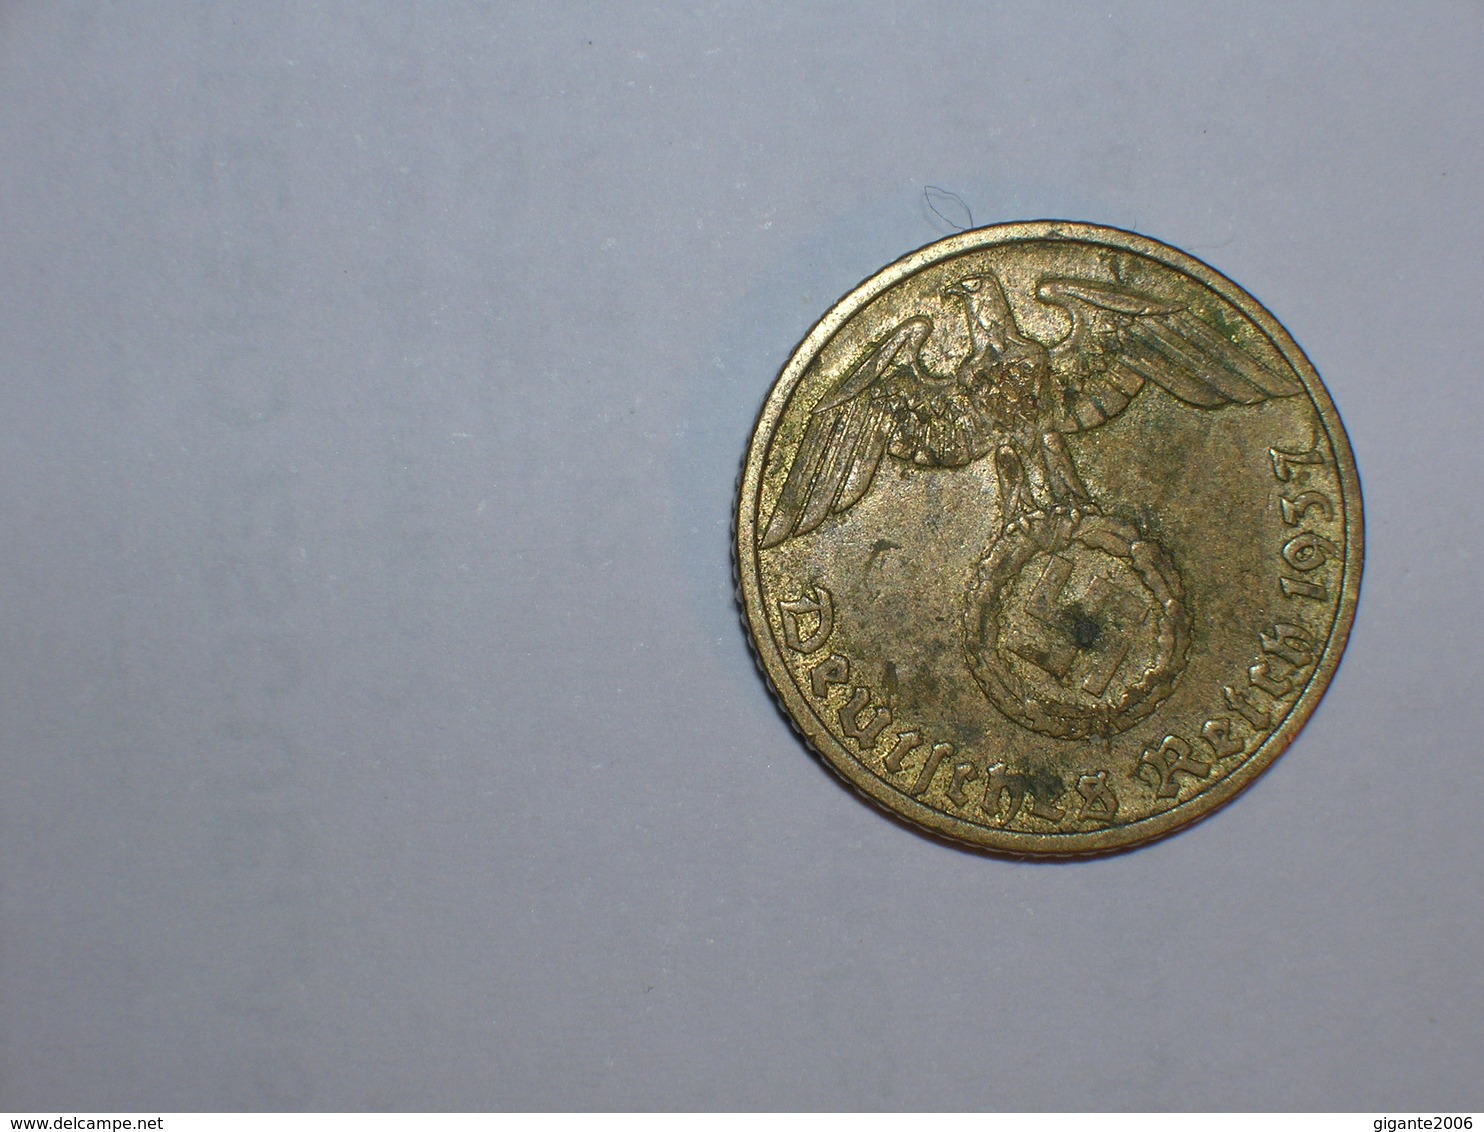 ALEMANIA- 5 PFENNIG 1937 G (895) - 5 Reichspfennig